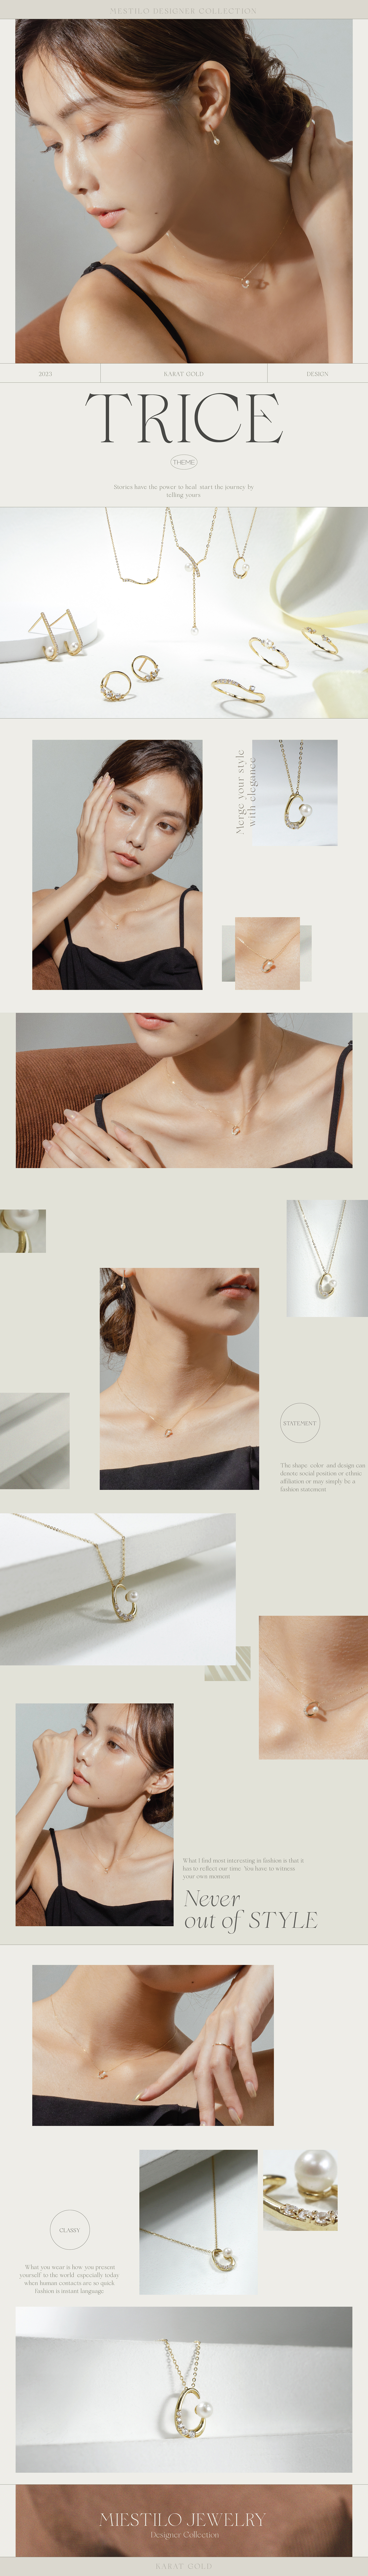 14K 曙光項鍊｜Miestilo Jewelry設計師輕珠寶品牌｜舒飾質感每一刻